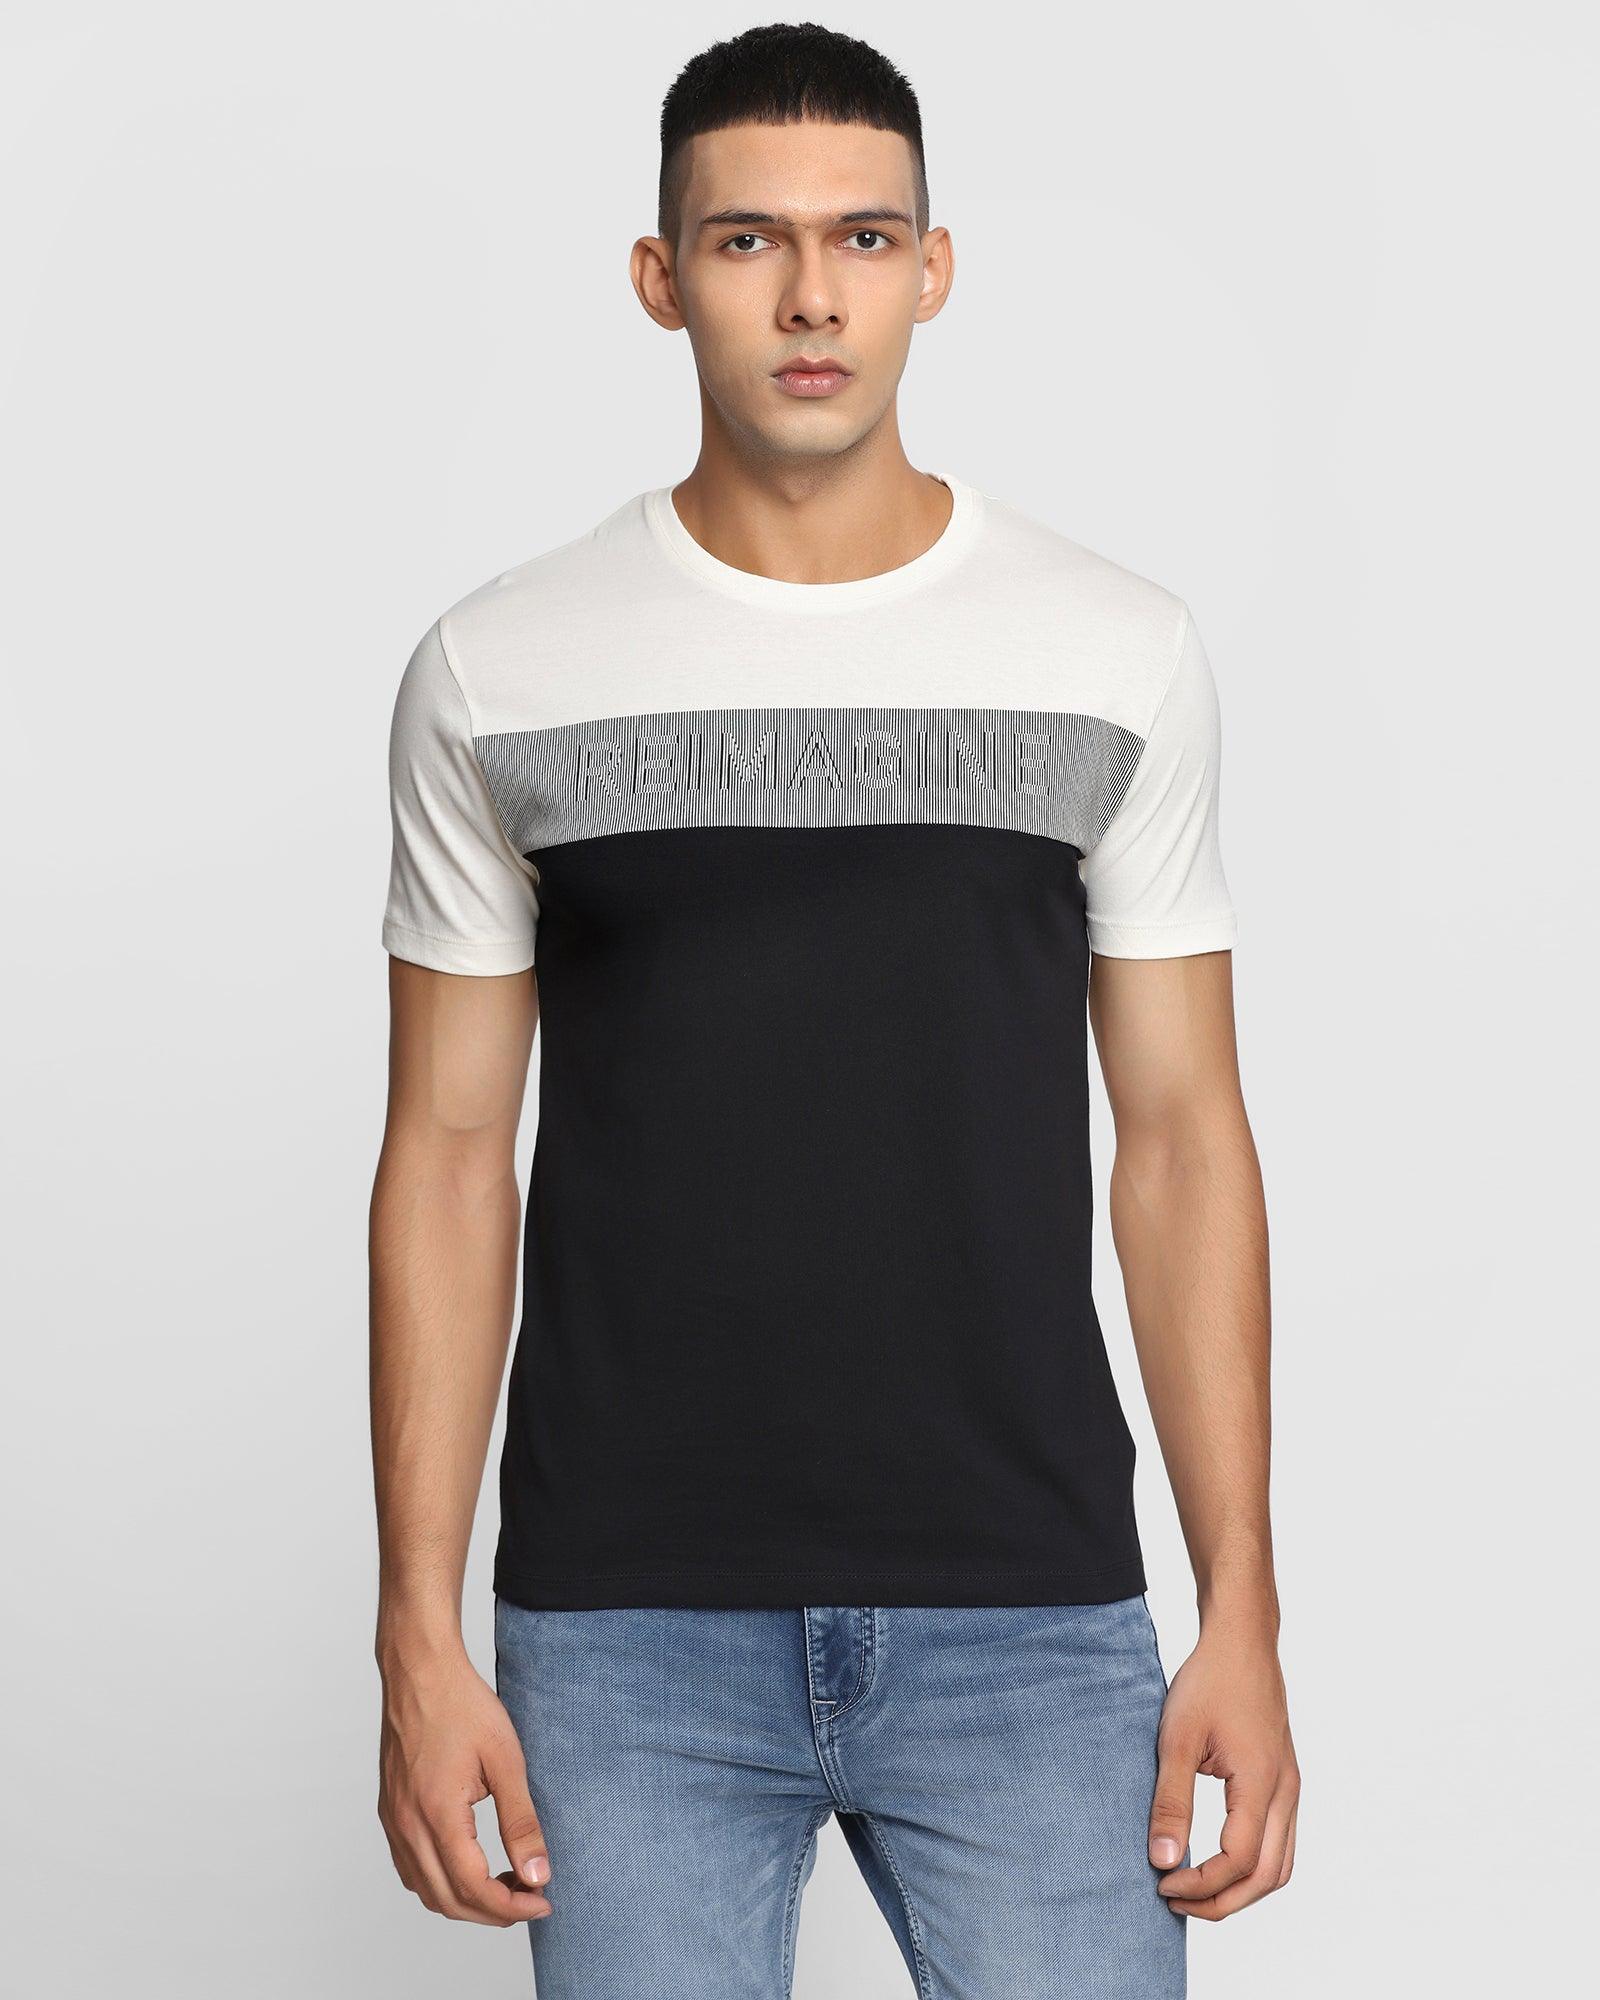 Crew Neck Black Printed T Shirt - Reimagine